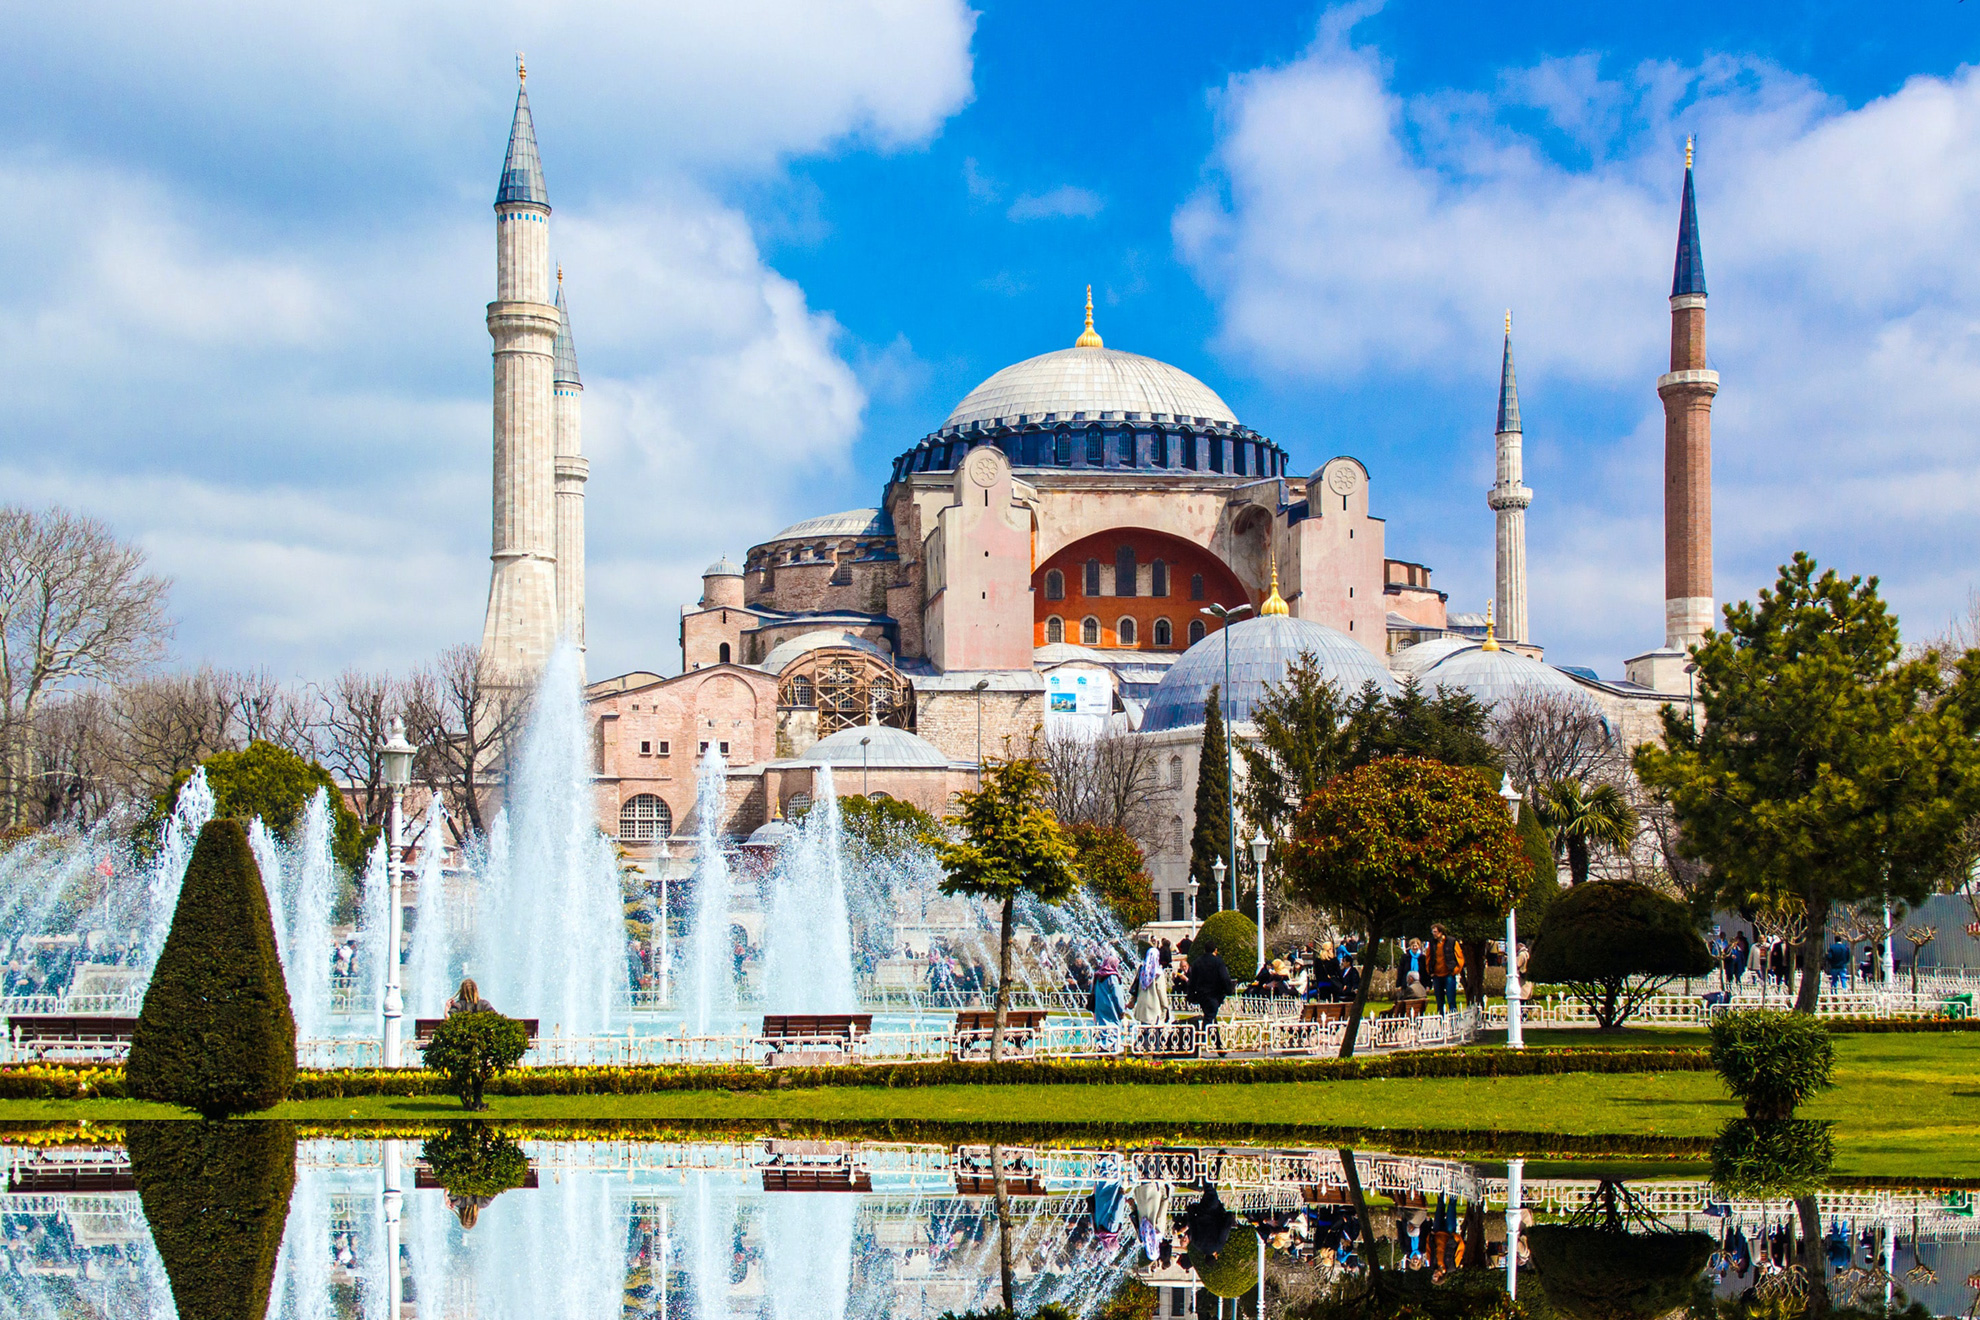  Истанбул - величието на една империя - Света София, Истанбул, Турция - Hagia Sophia, Istanbul, Turkey